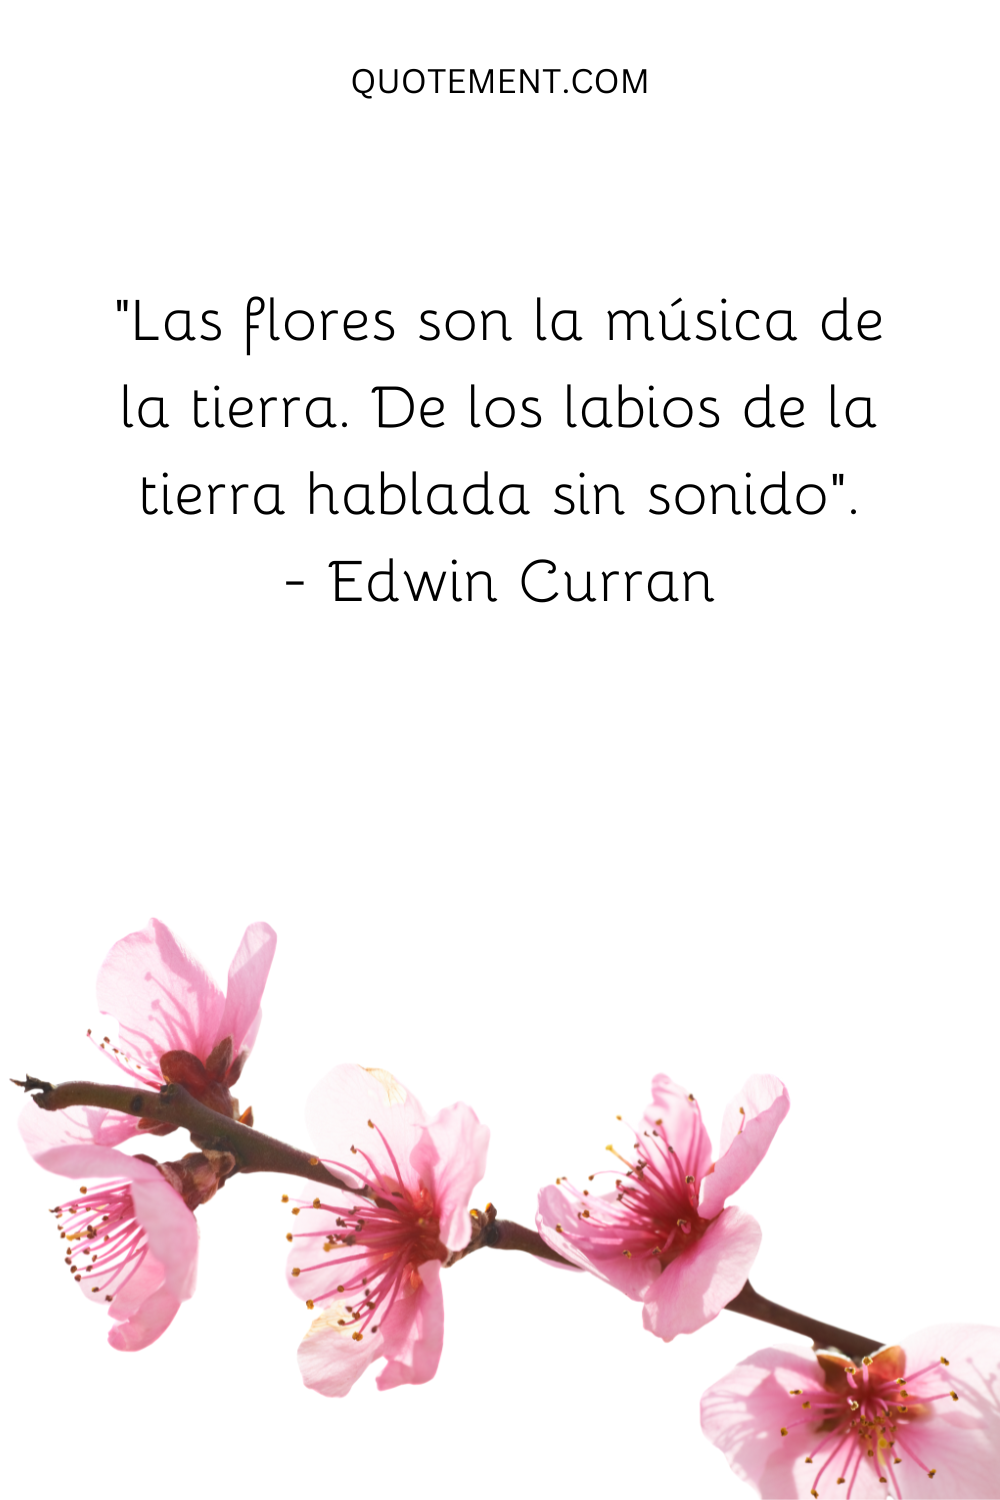 "Las flores son la música de la tierra. De los labios de la tierra hablada sin sonido". - Edwin Curran